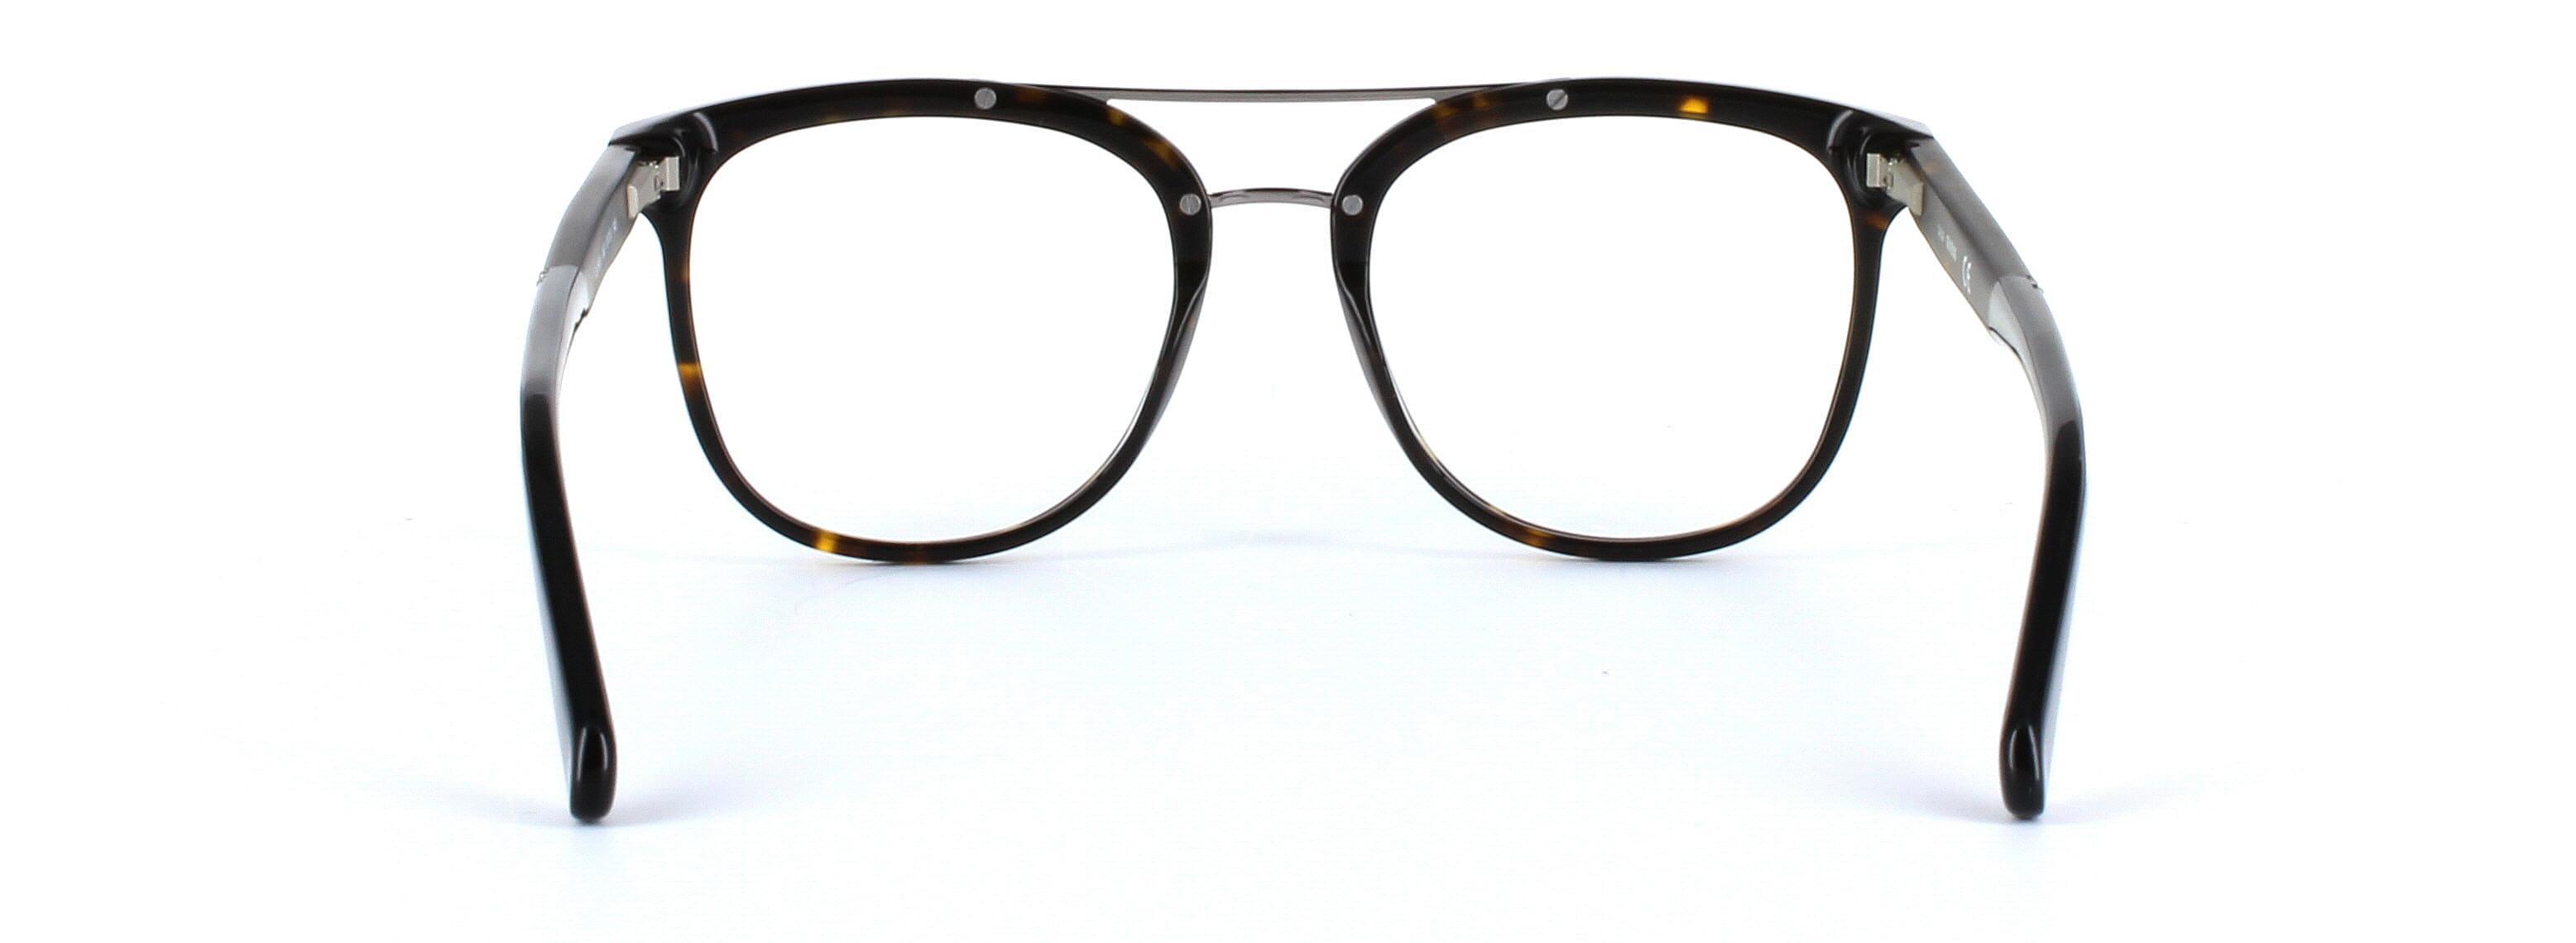 GUESS (GU1953-052) Brown Full Rim Square Acetate Glasses - Image View 3